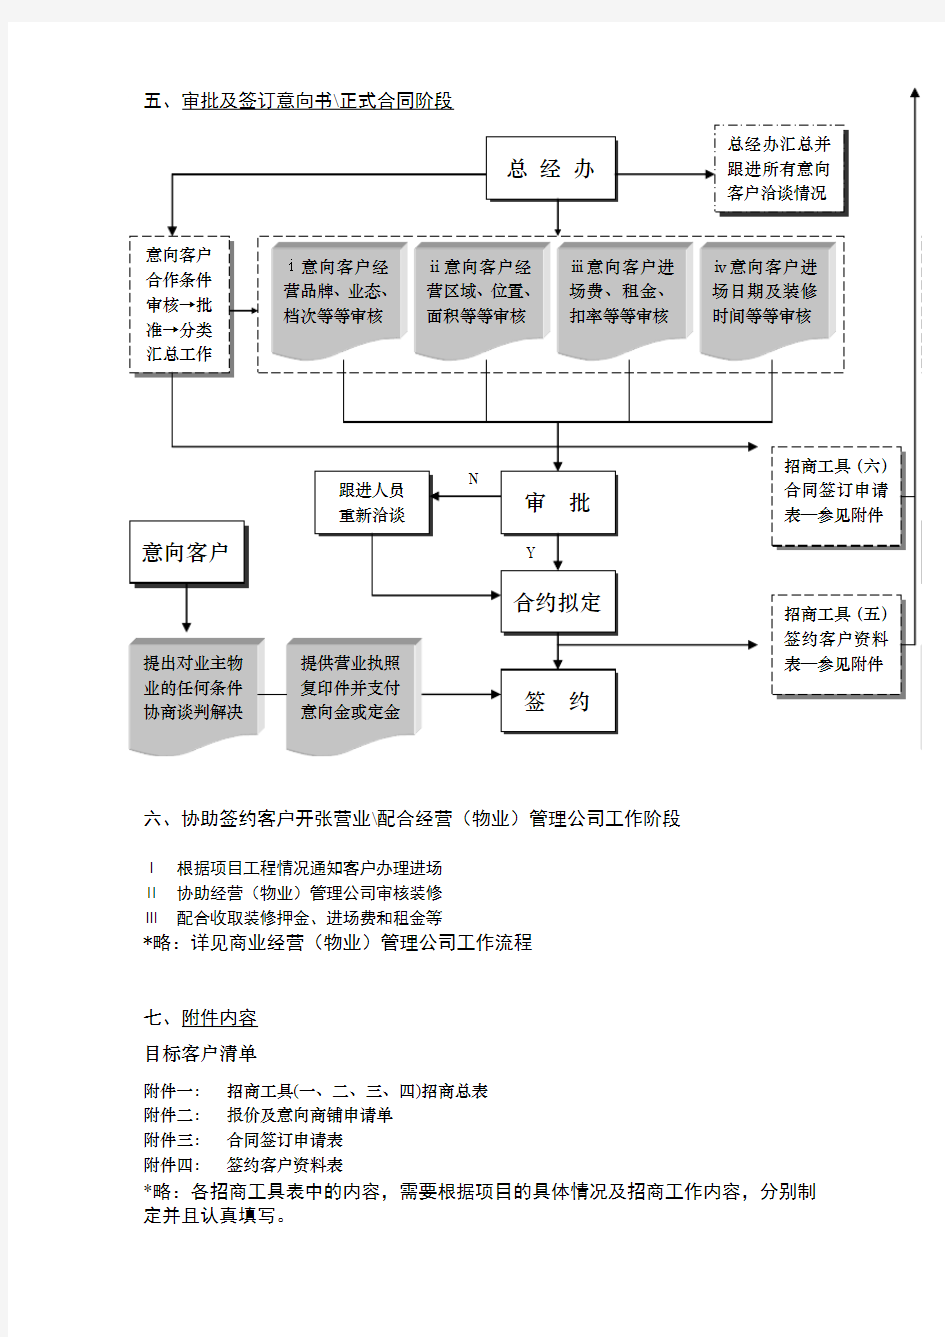 商业地产招商流程图(七步,2p)